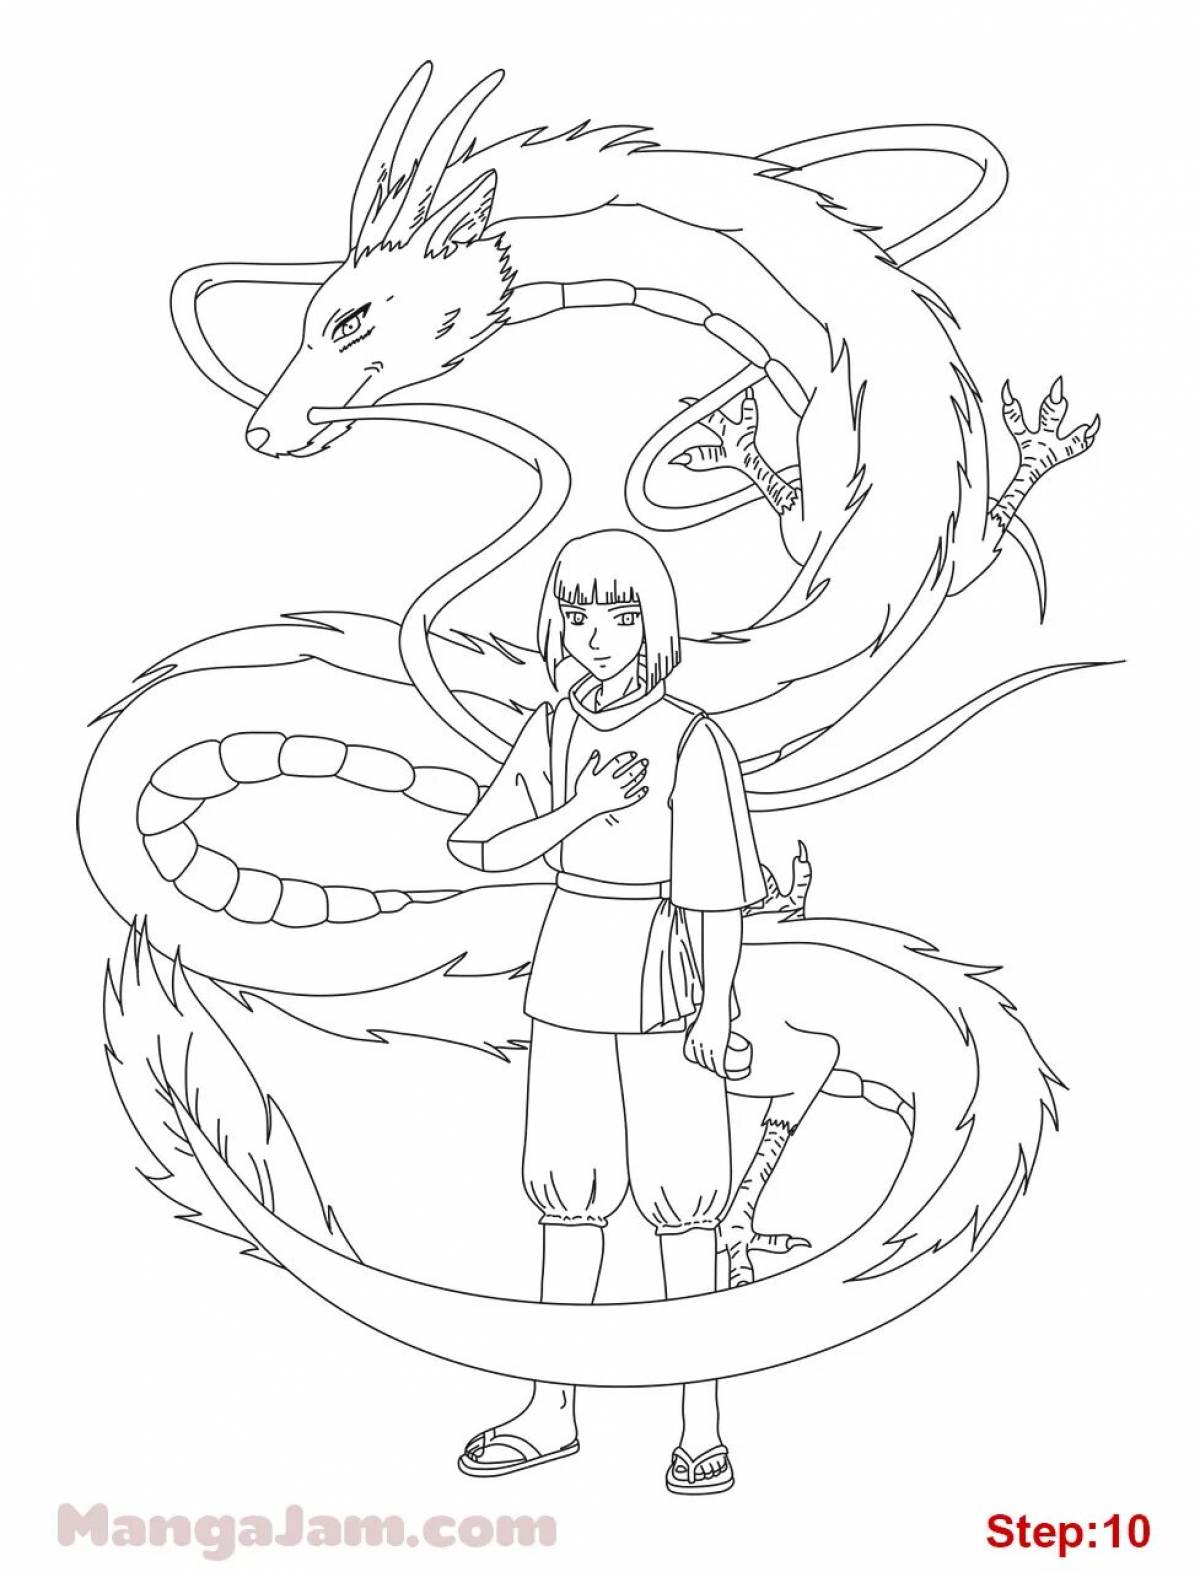 Dragon haku #3